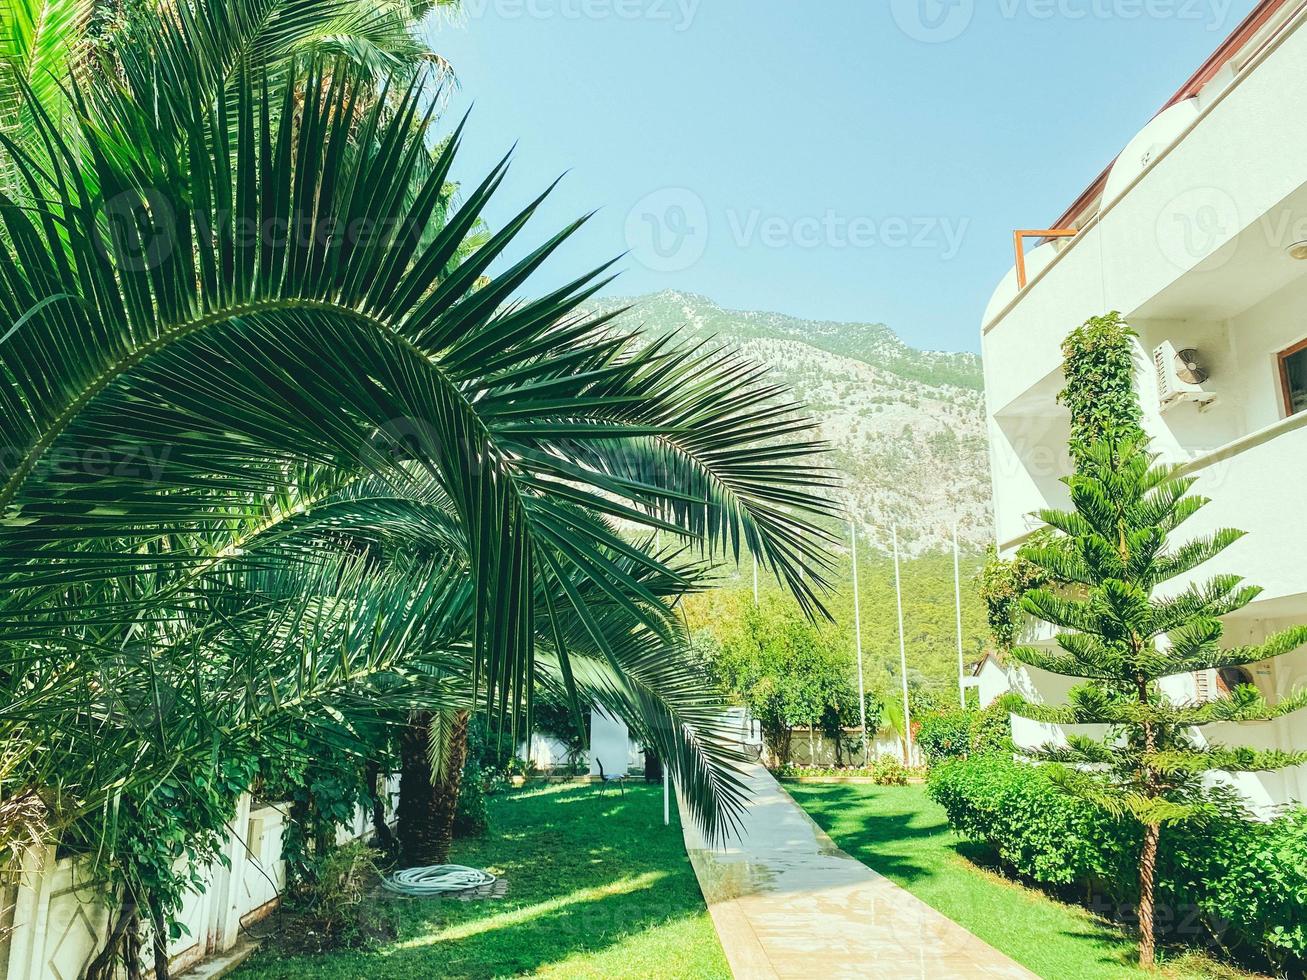 exotische Grünpflanzen in einem heißen Land. Palmen mit langen, grünen Blättern. hohe Bäume vor dem Hintergrund eines teuren weißen Hotels und Berge foto